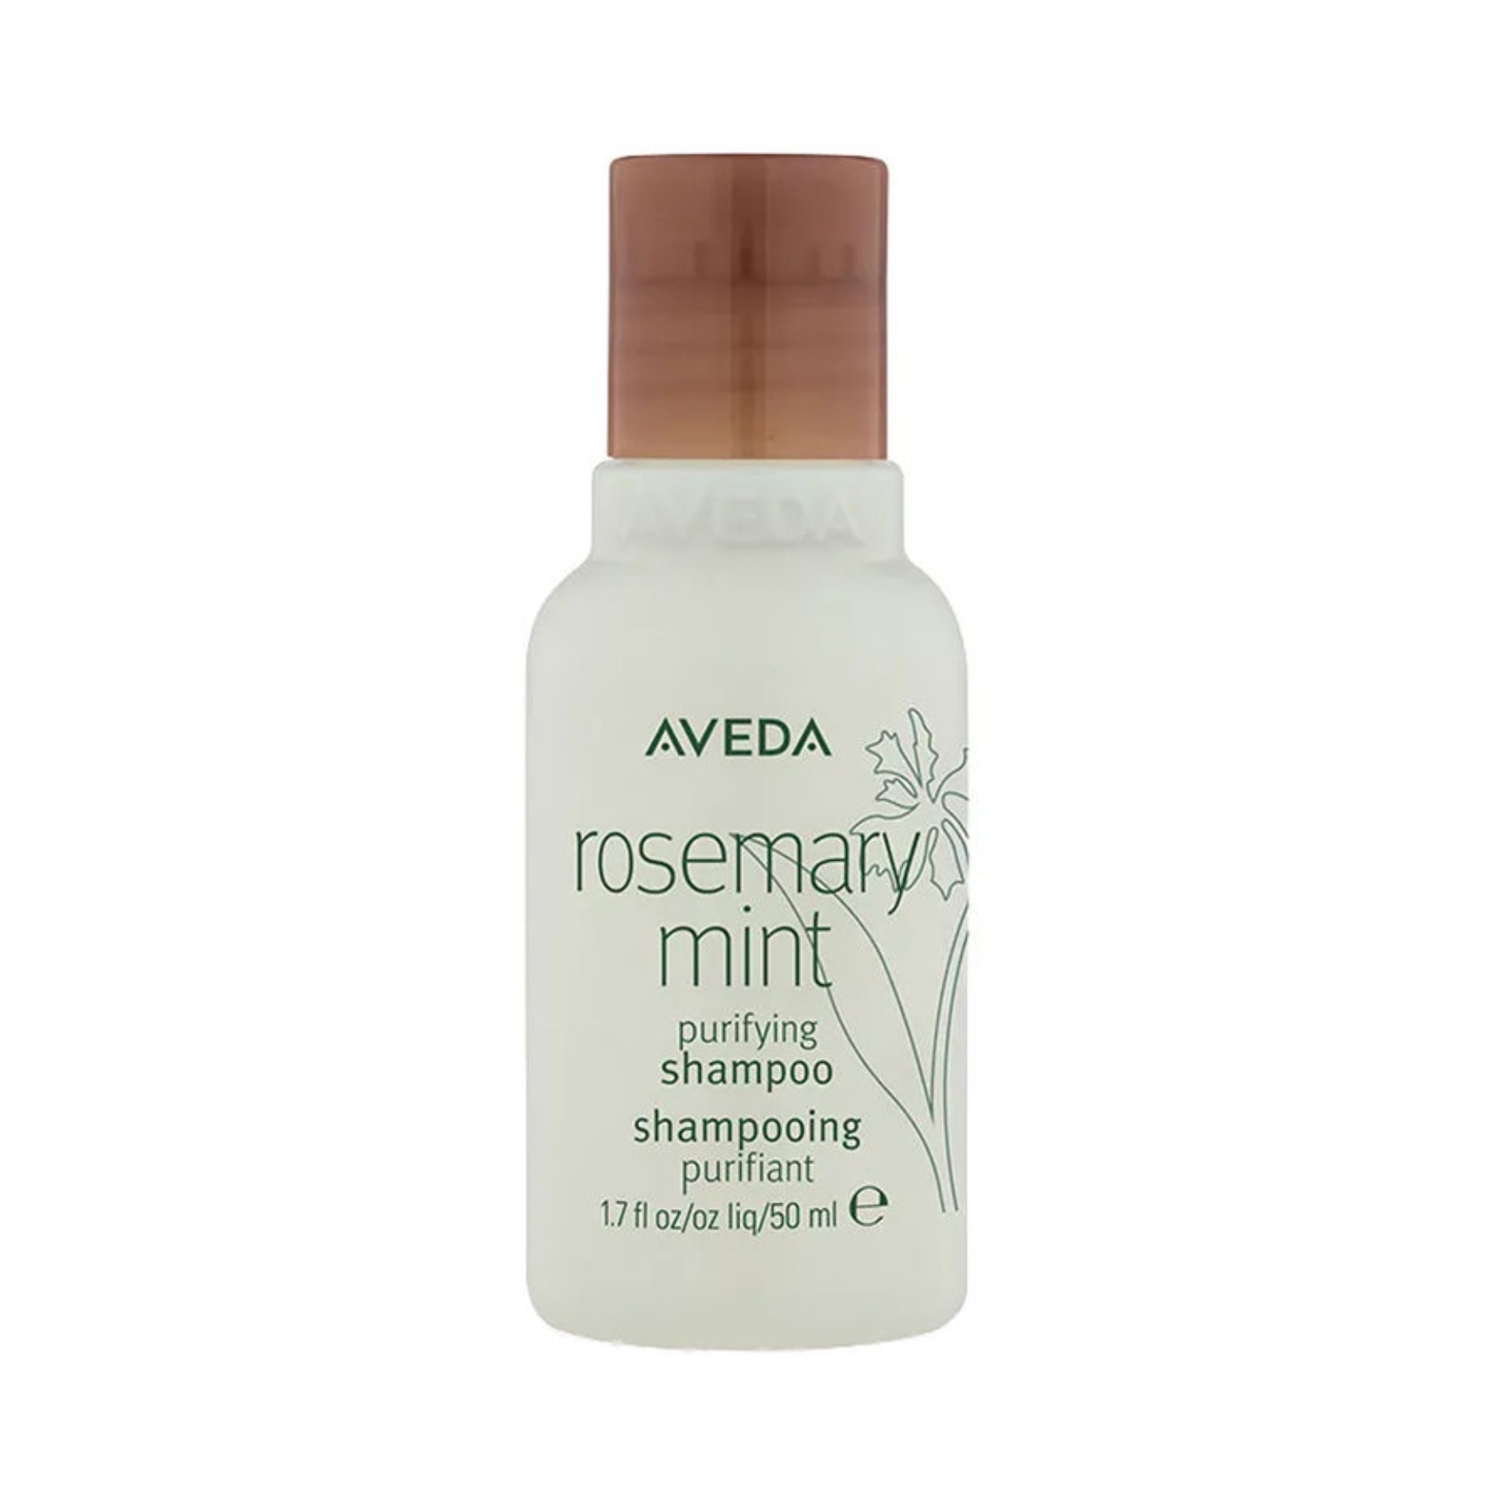 Aveda | Aveda Rosemary Mint Purifying Shampoo (50ml)